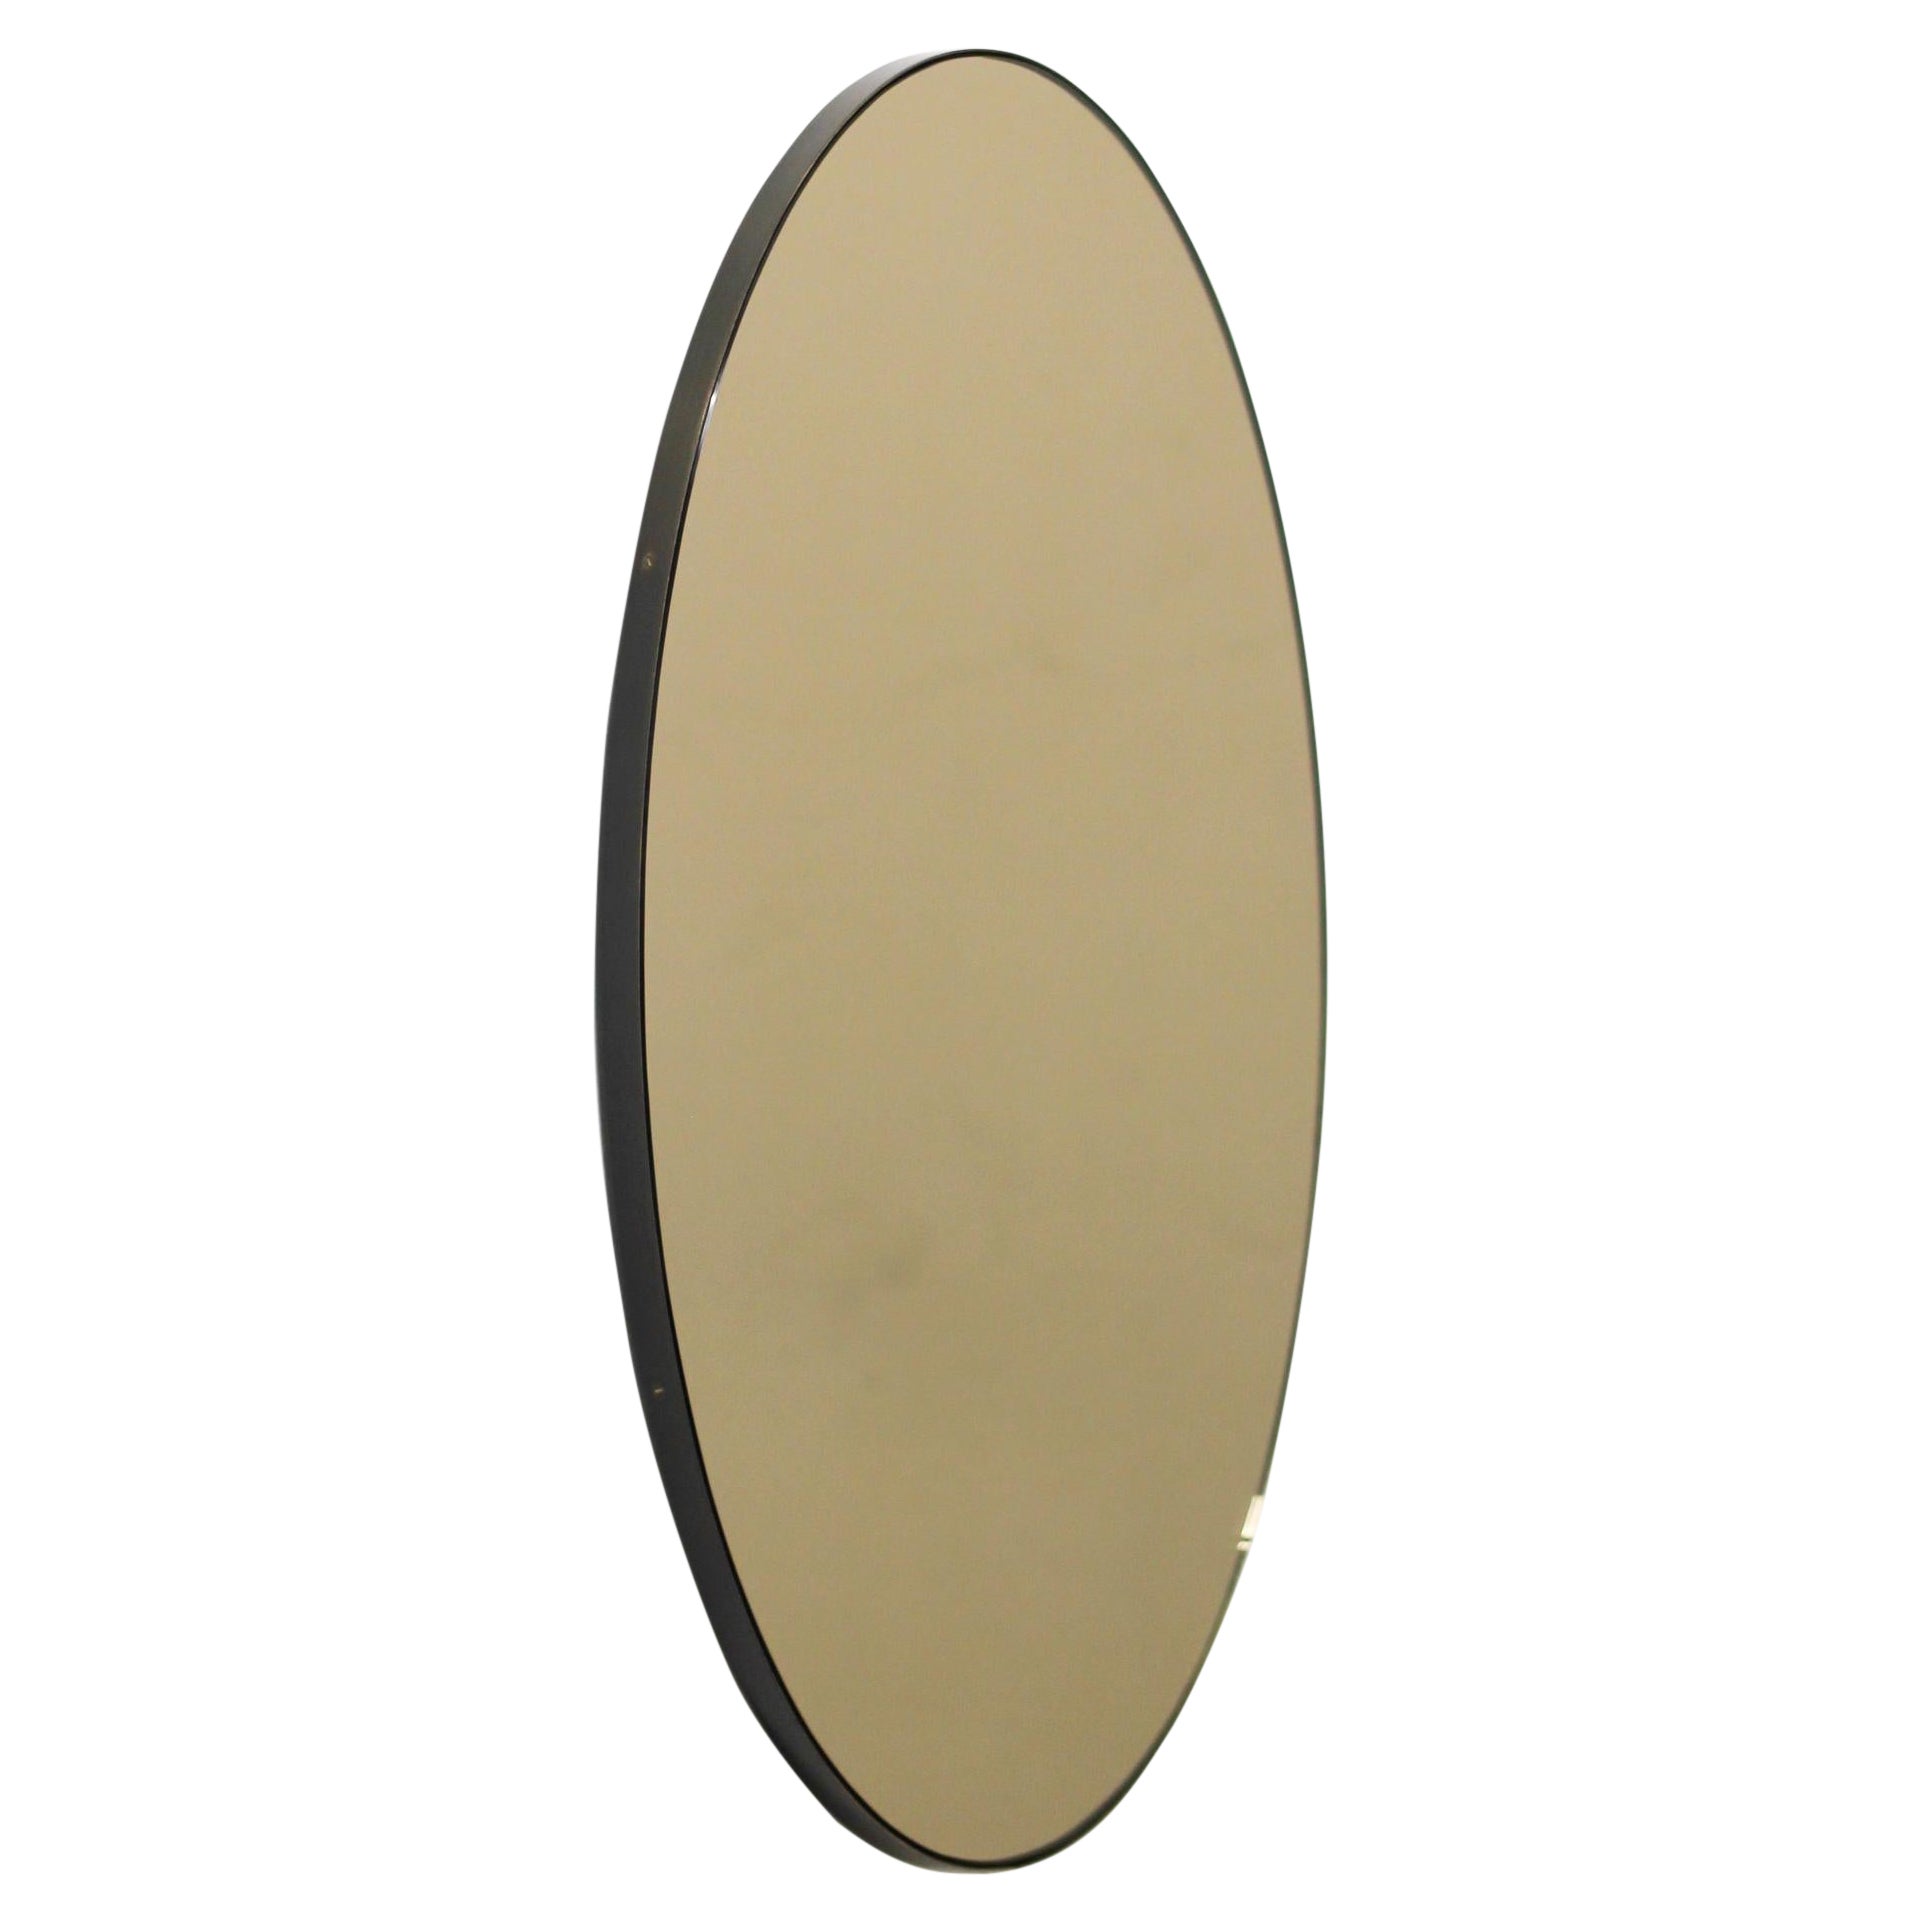 Ovalis, ovaler, getönter, moderner Bronzespiegel mit Patina-Rahmen, groß